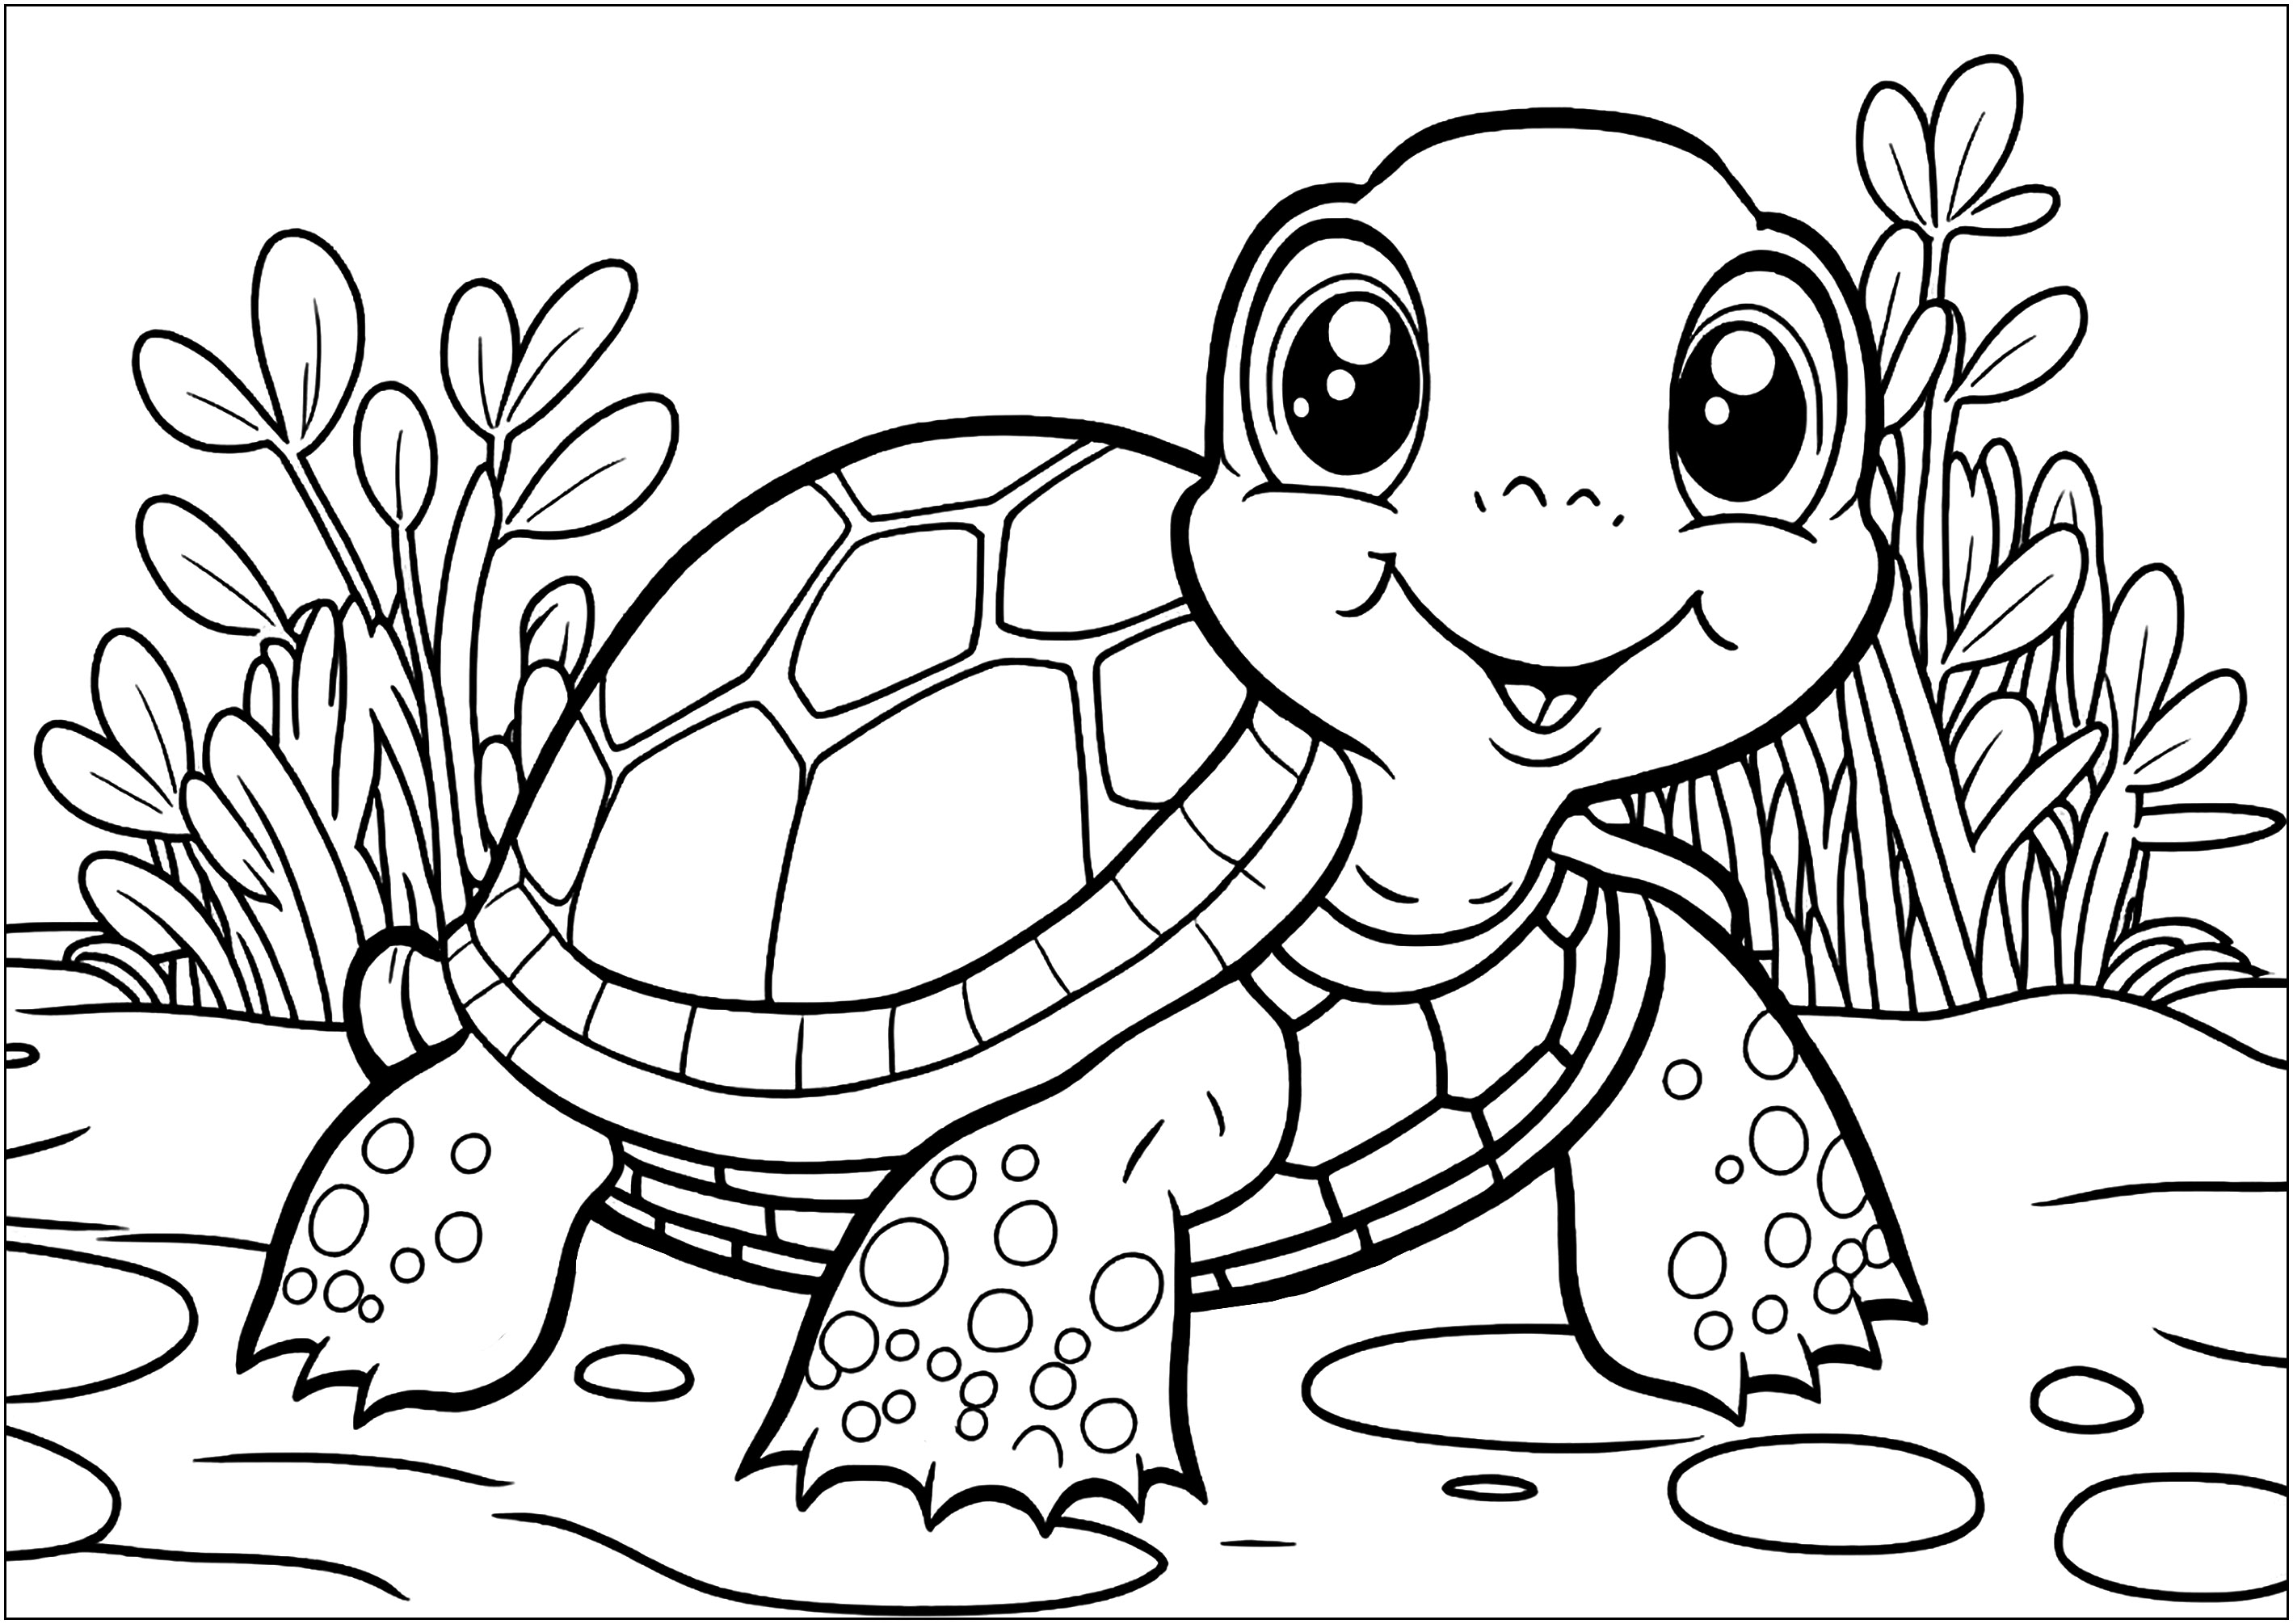 Turtle Coloring Pages Free Printable - prntbl.concejomunicipaldechinu ...